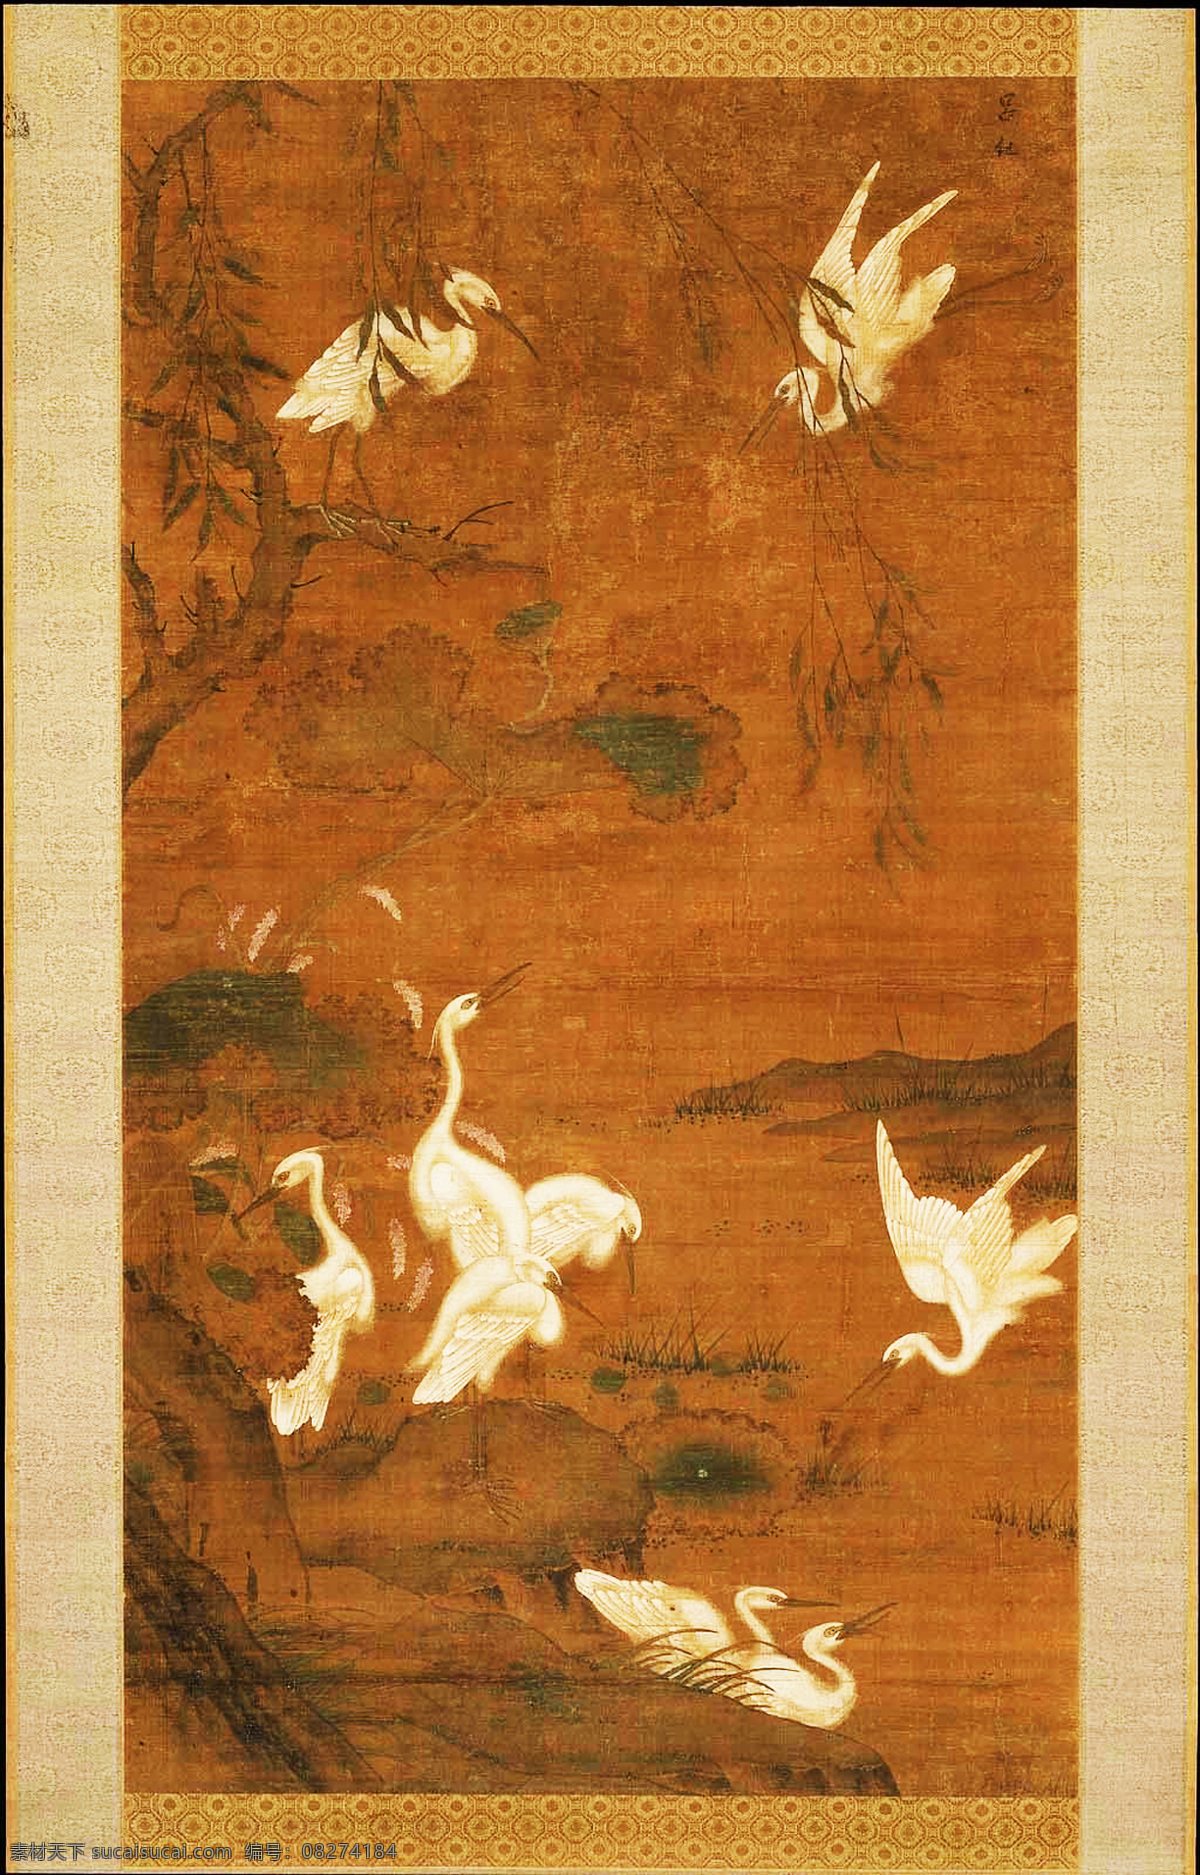 明 吕纪 九鹭图 设计素材 花鸟名画 古典藏画 书画美术 棕色